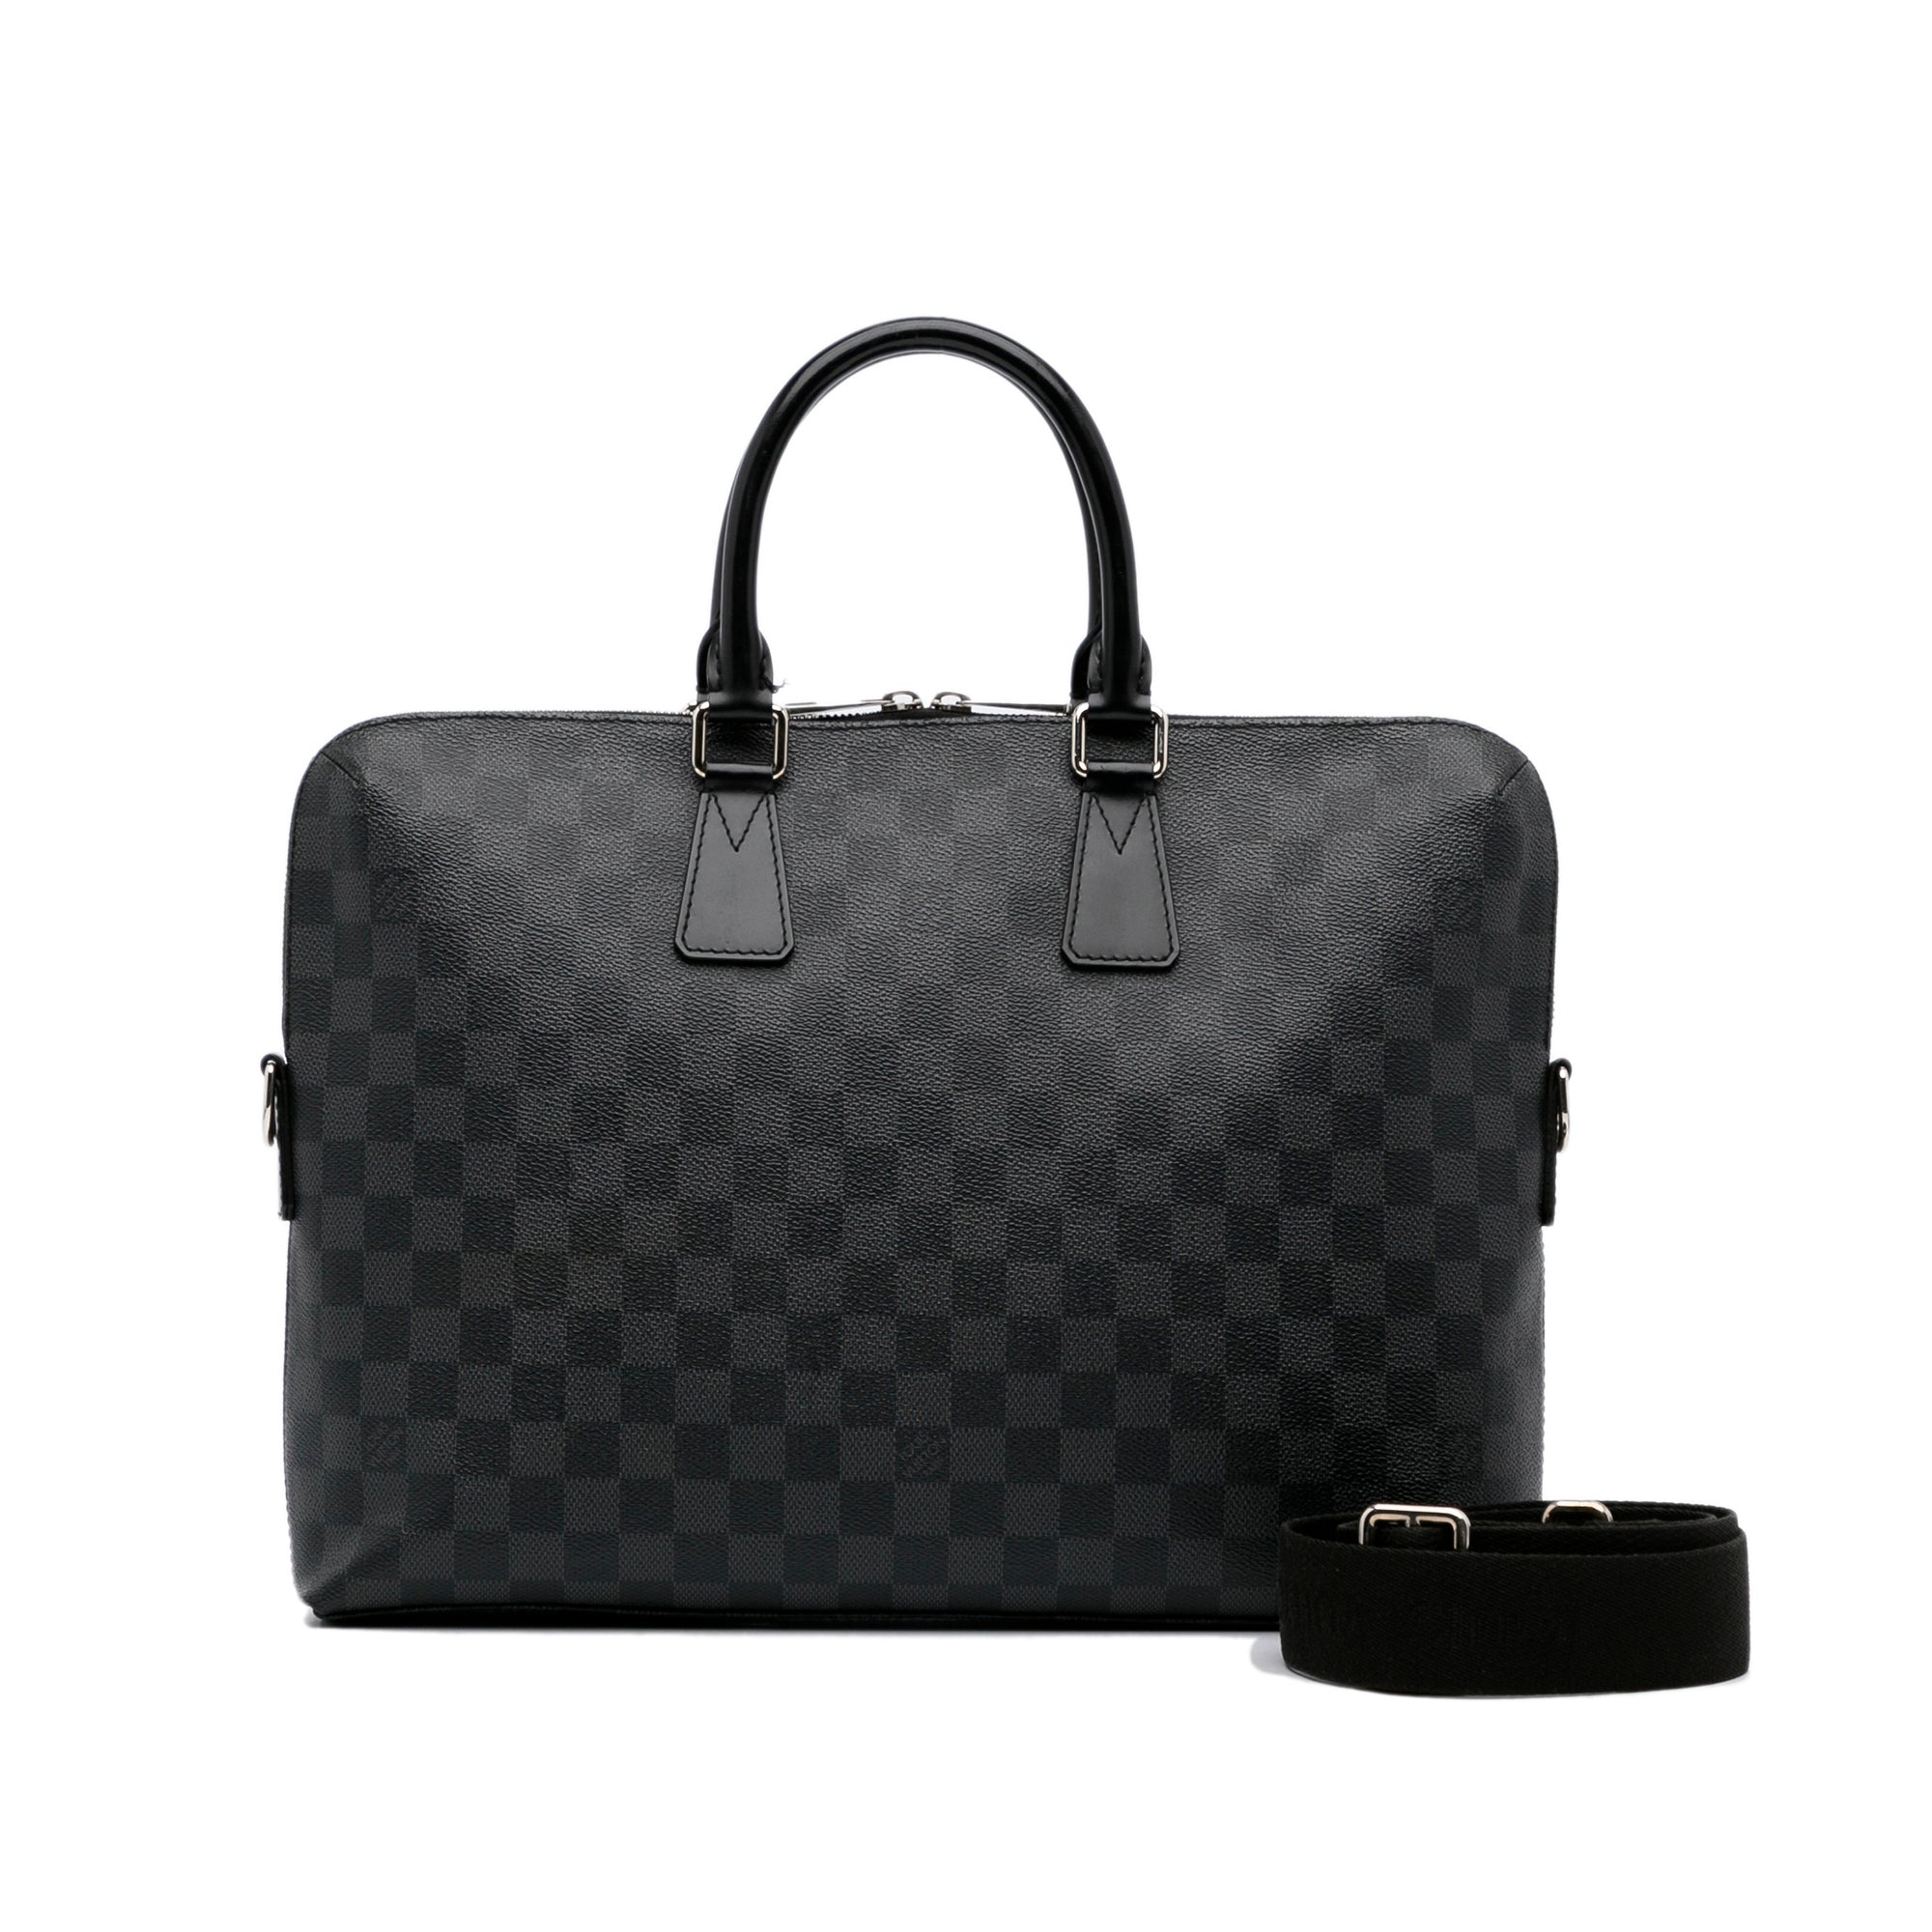 Louis Vuitton document poche laptop case clutch